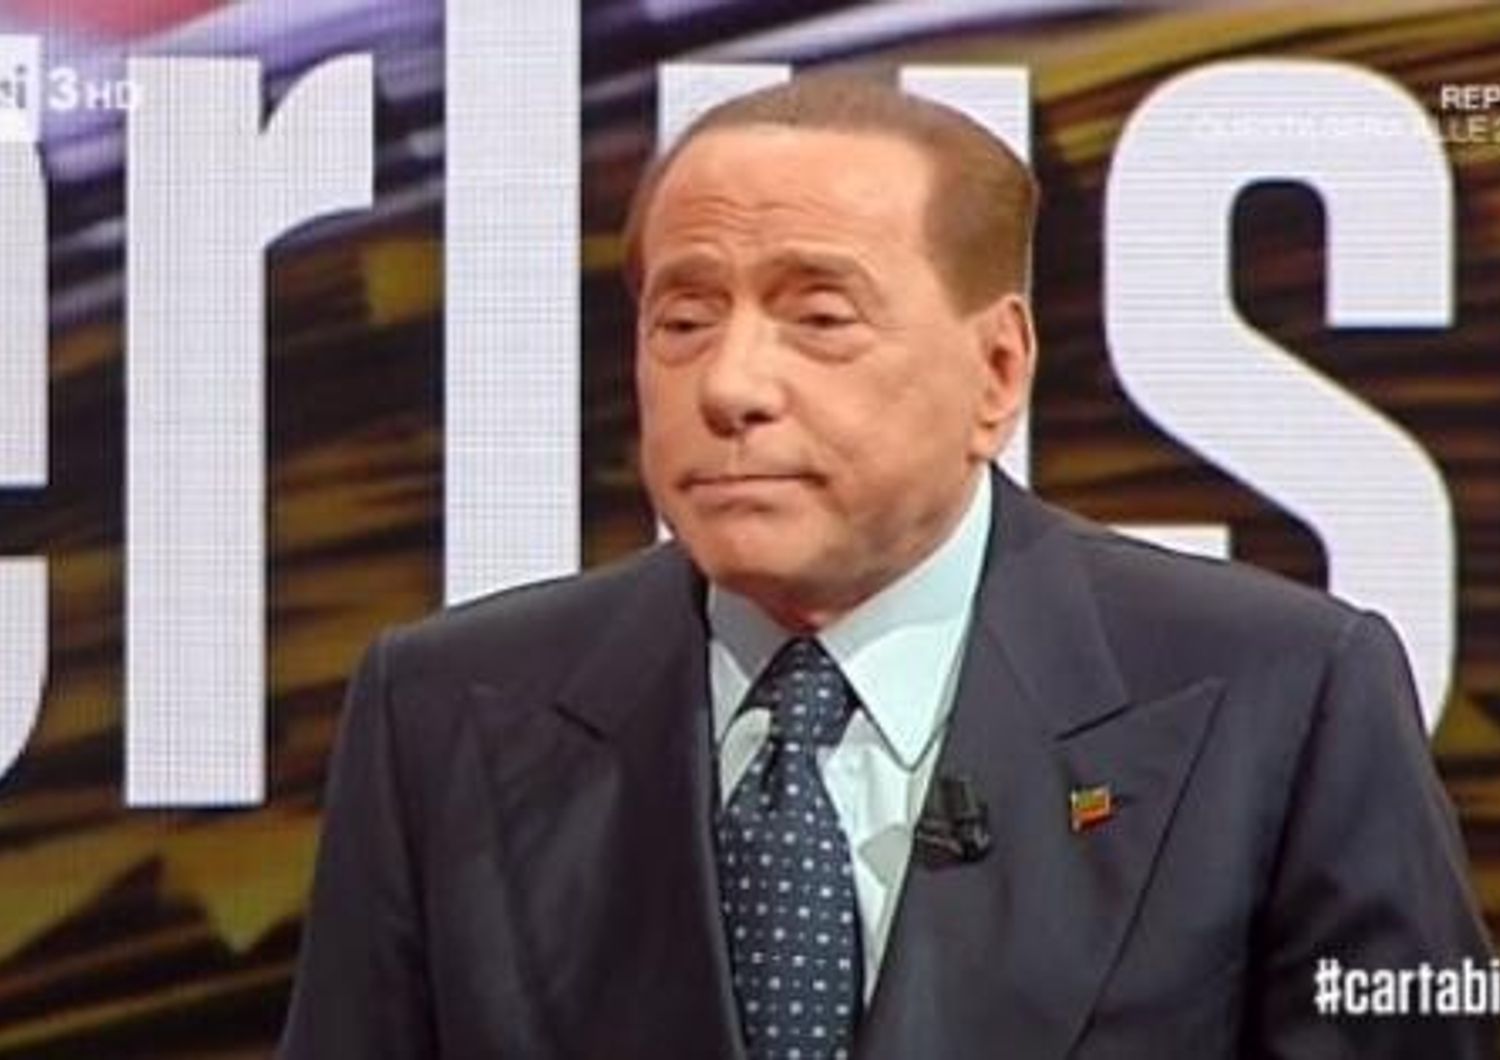 &nbsp;Lite Berlusconi Bianca Berlinguer a Cartacarta